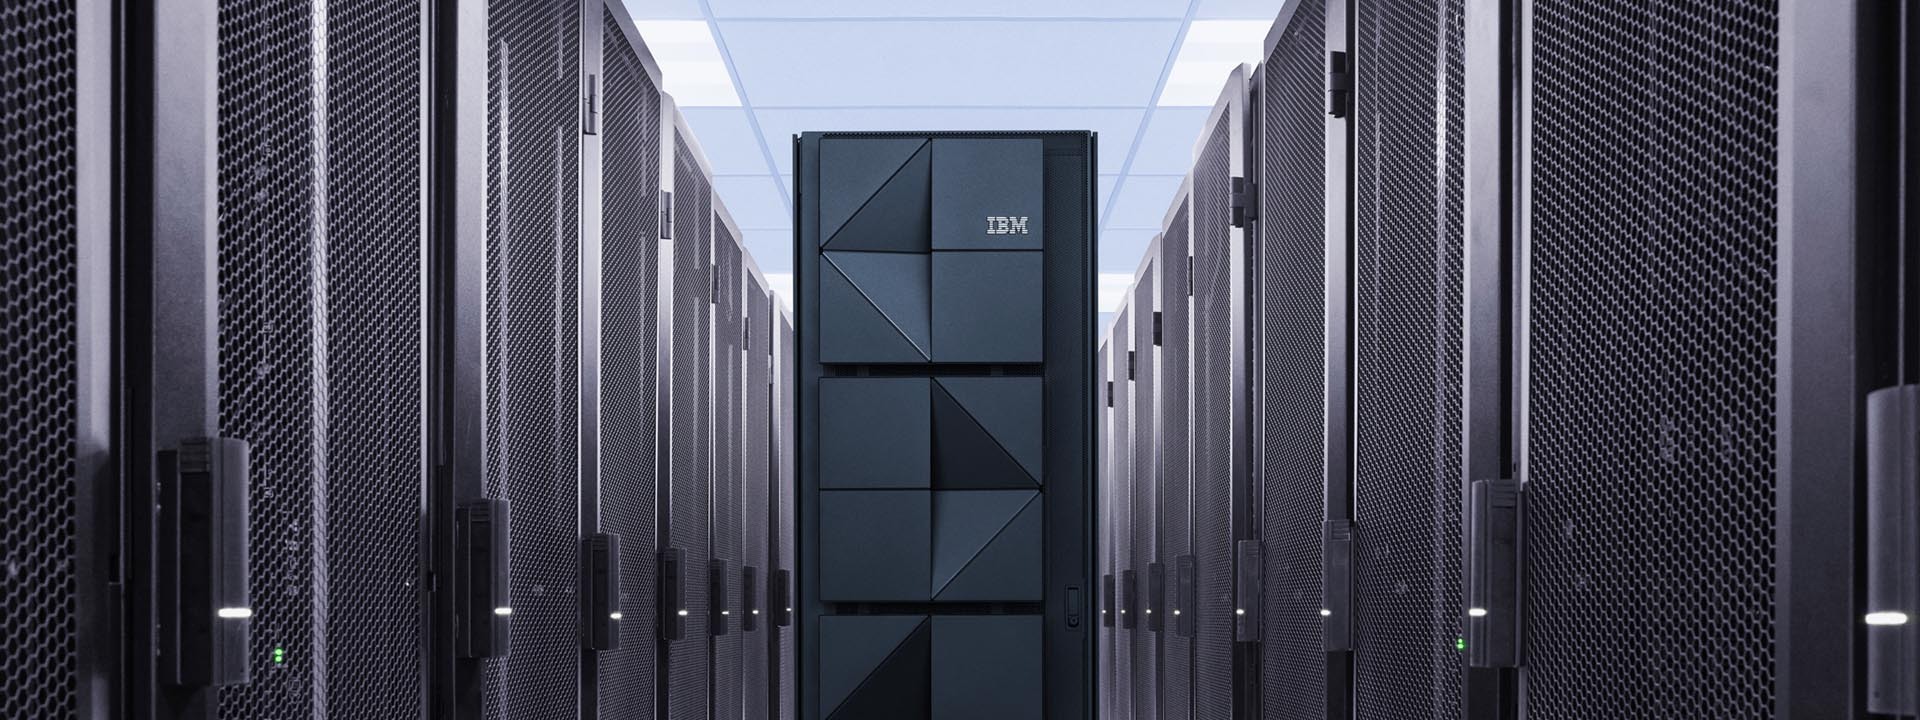 IBM z16. (foto: IBM NewsRoom)